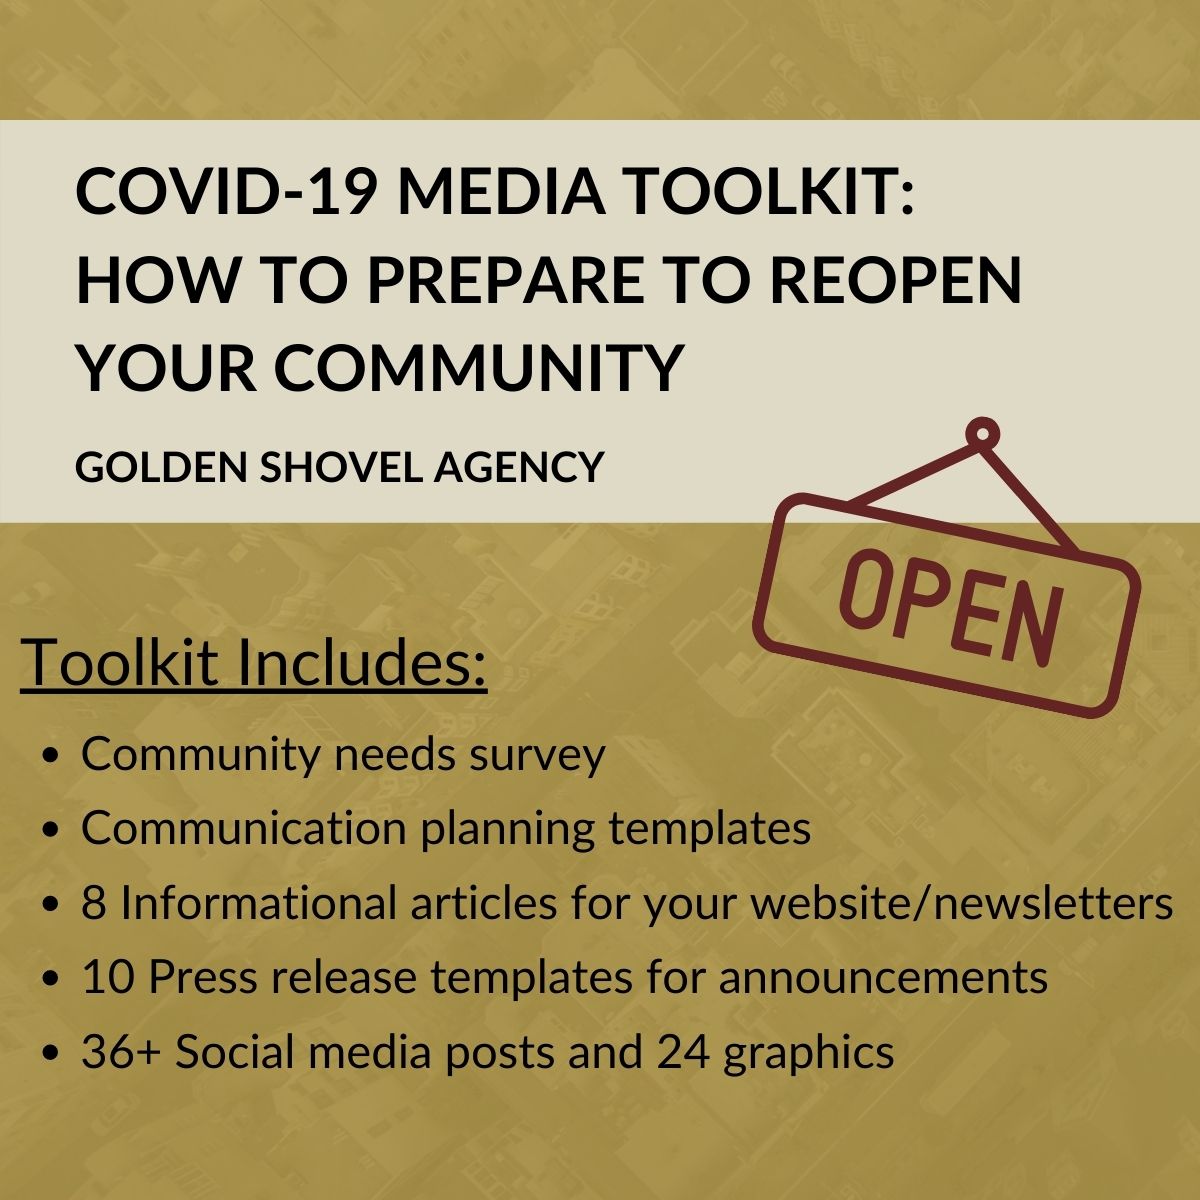 COVID-19 Media Toolkit Image